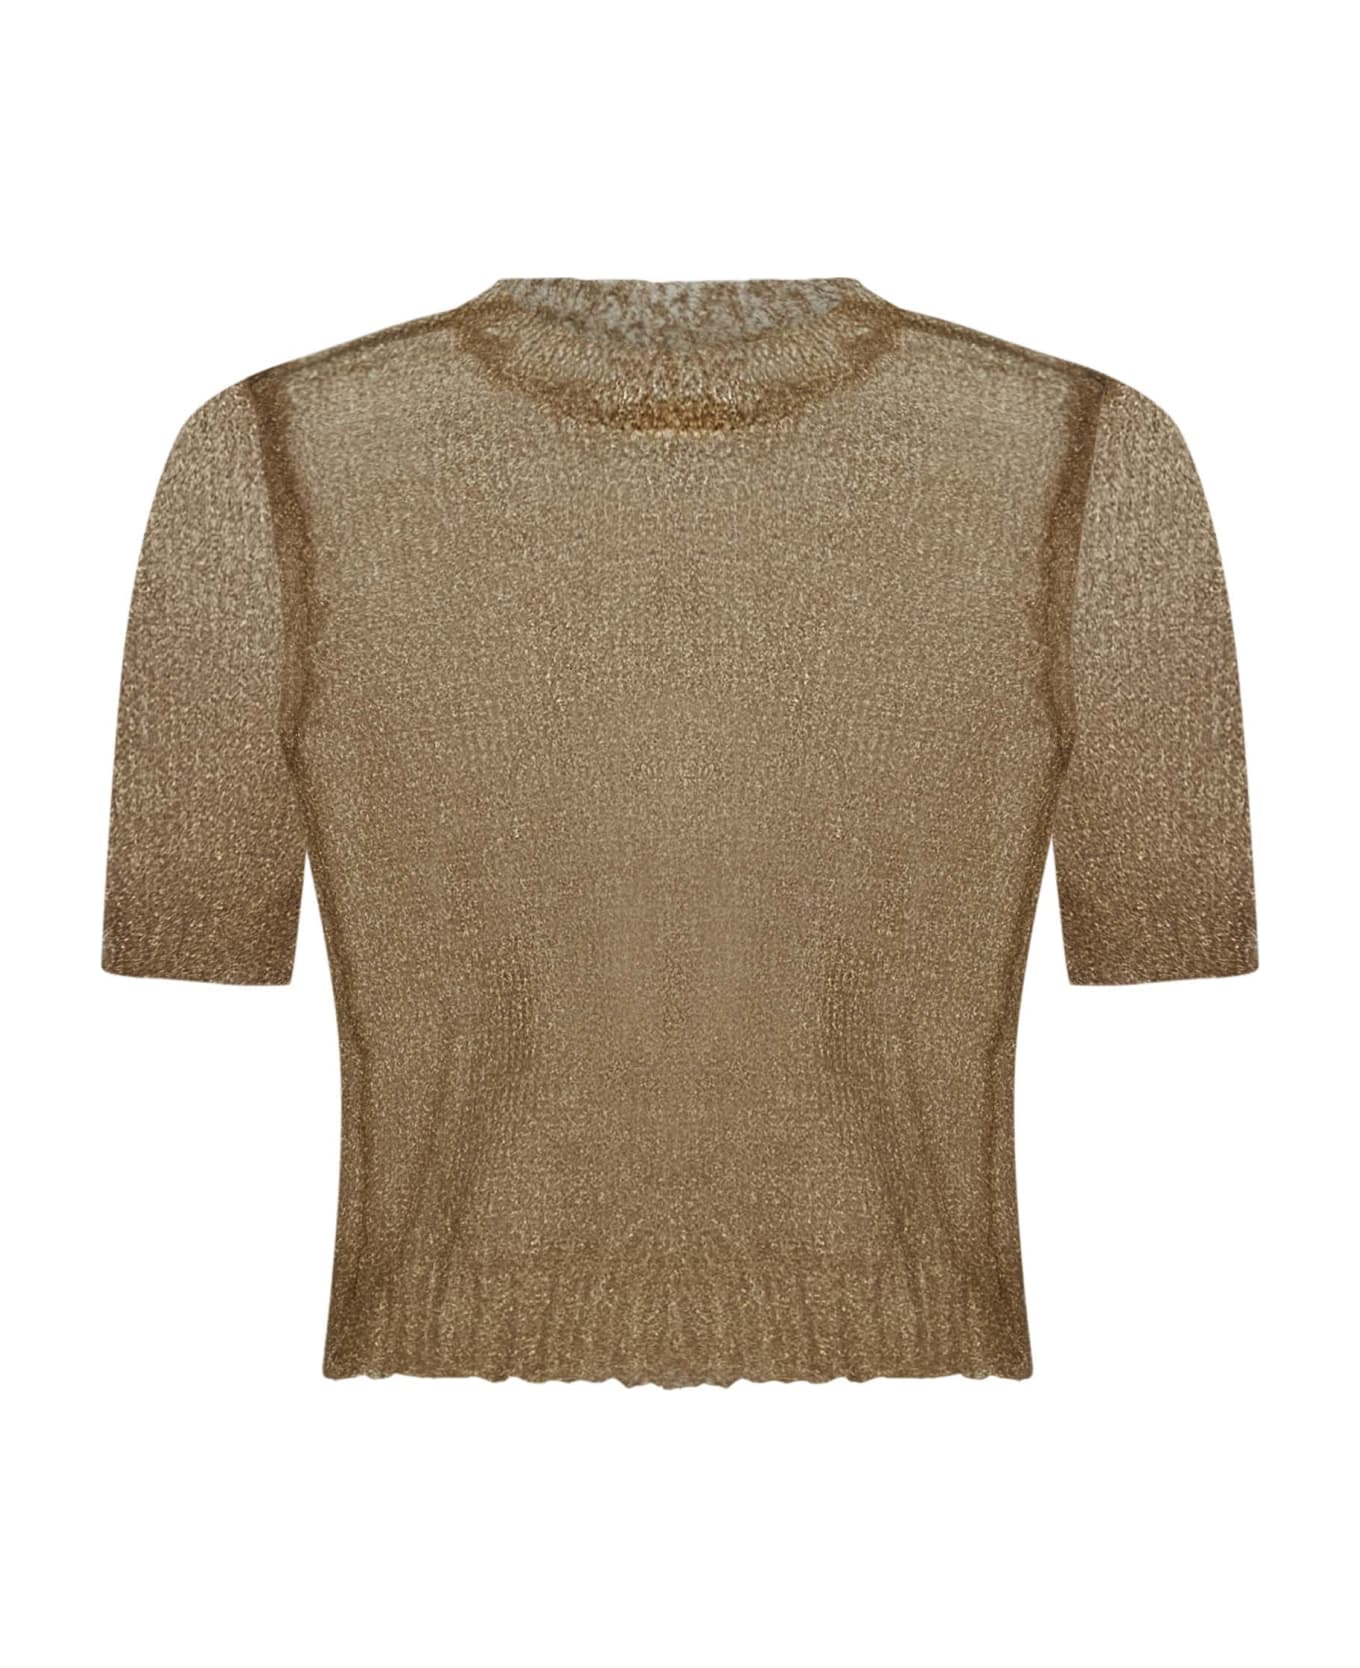 Maison Margiela Sweater - Golden